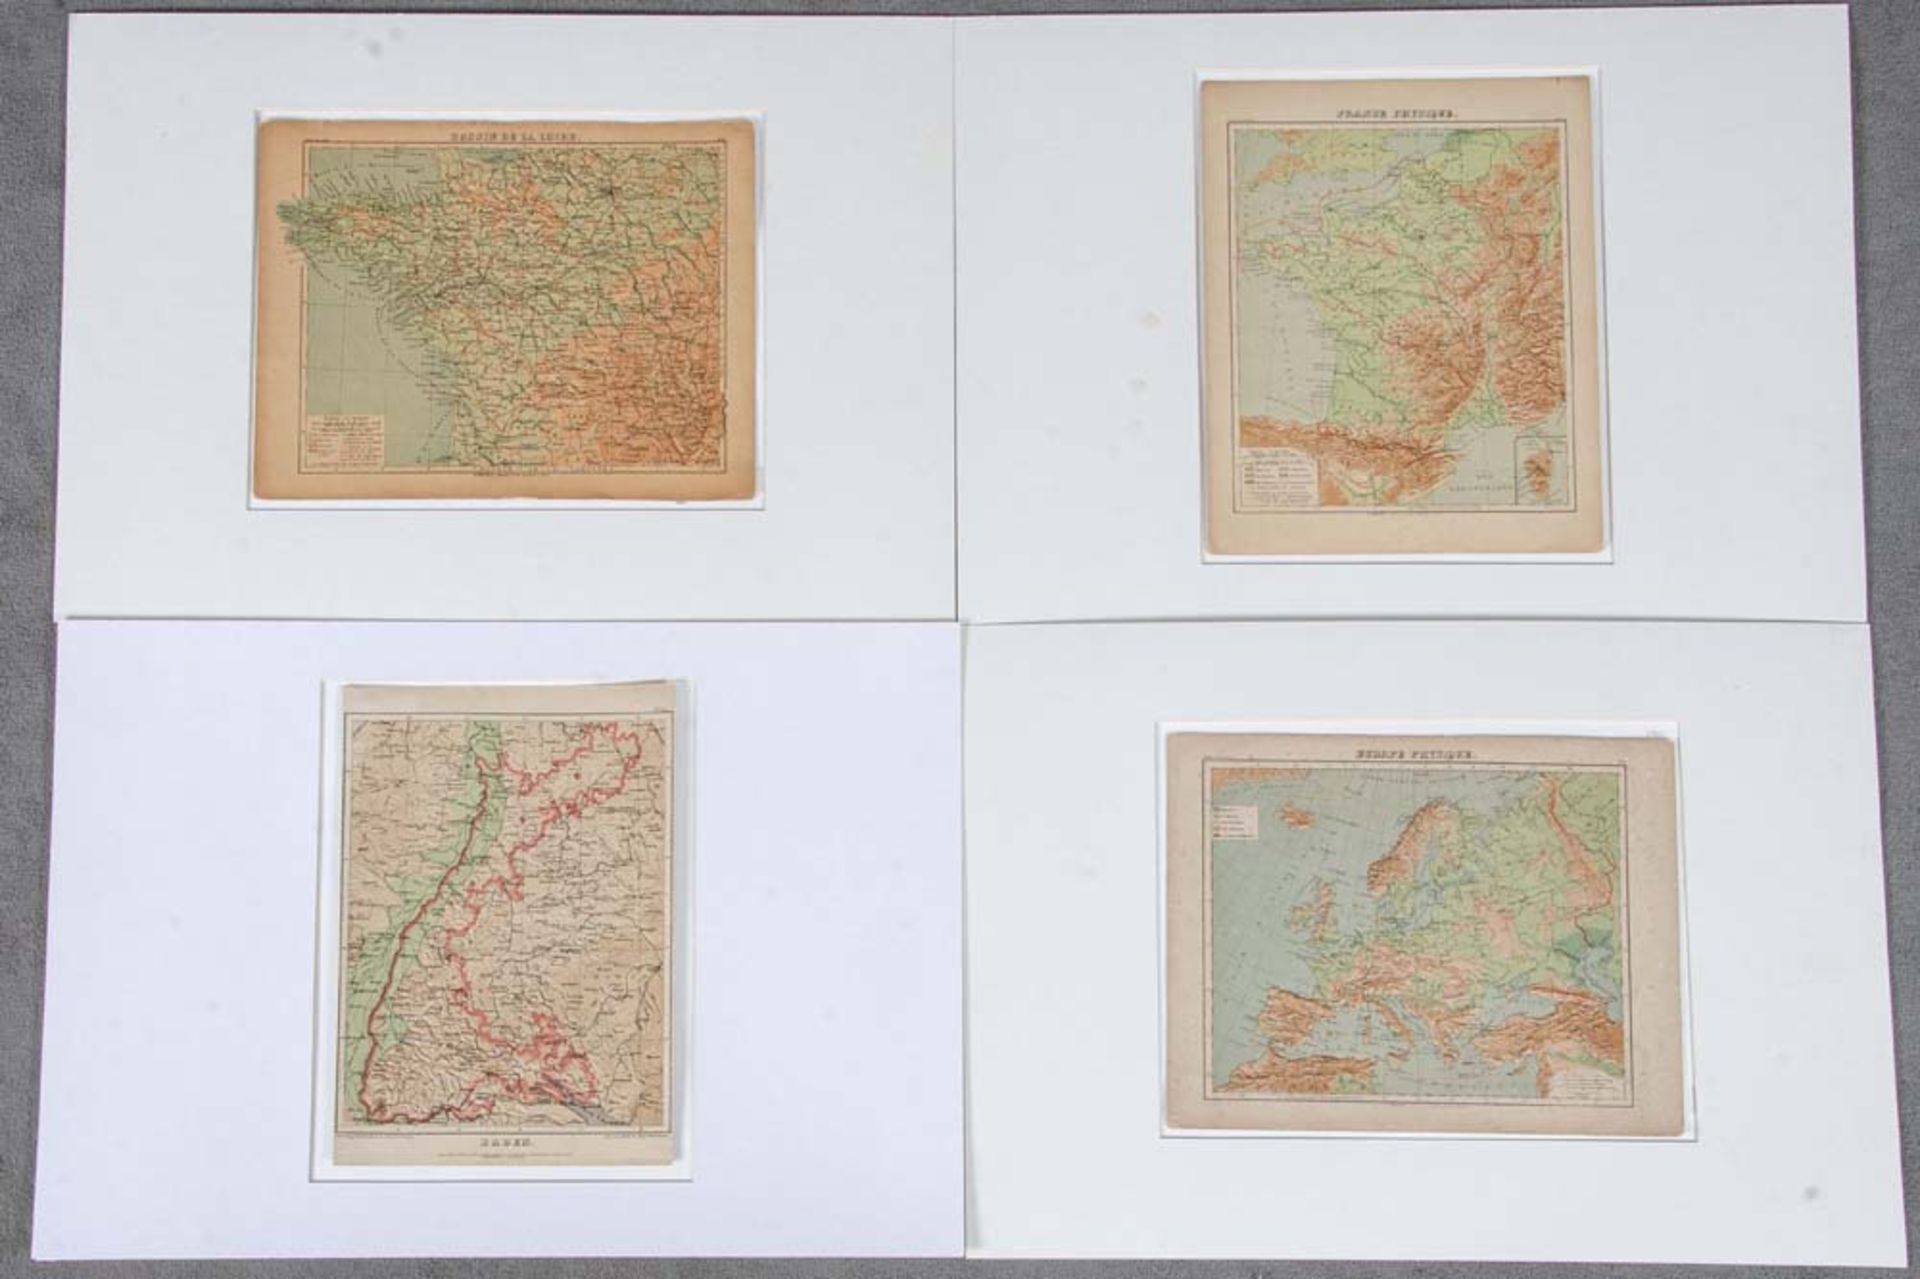 Mappe mit Drucken 20. Jh. Baden, Europe Physique, France Physique, Bassin de Loire, je 34 x 22 cm.